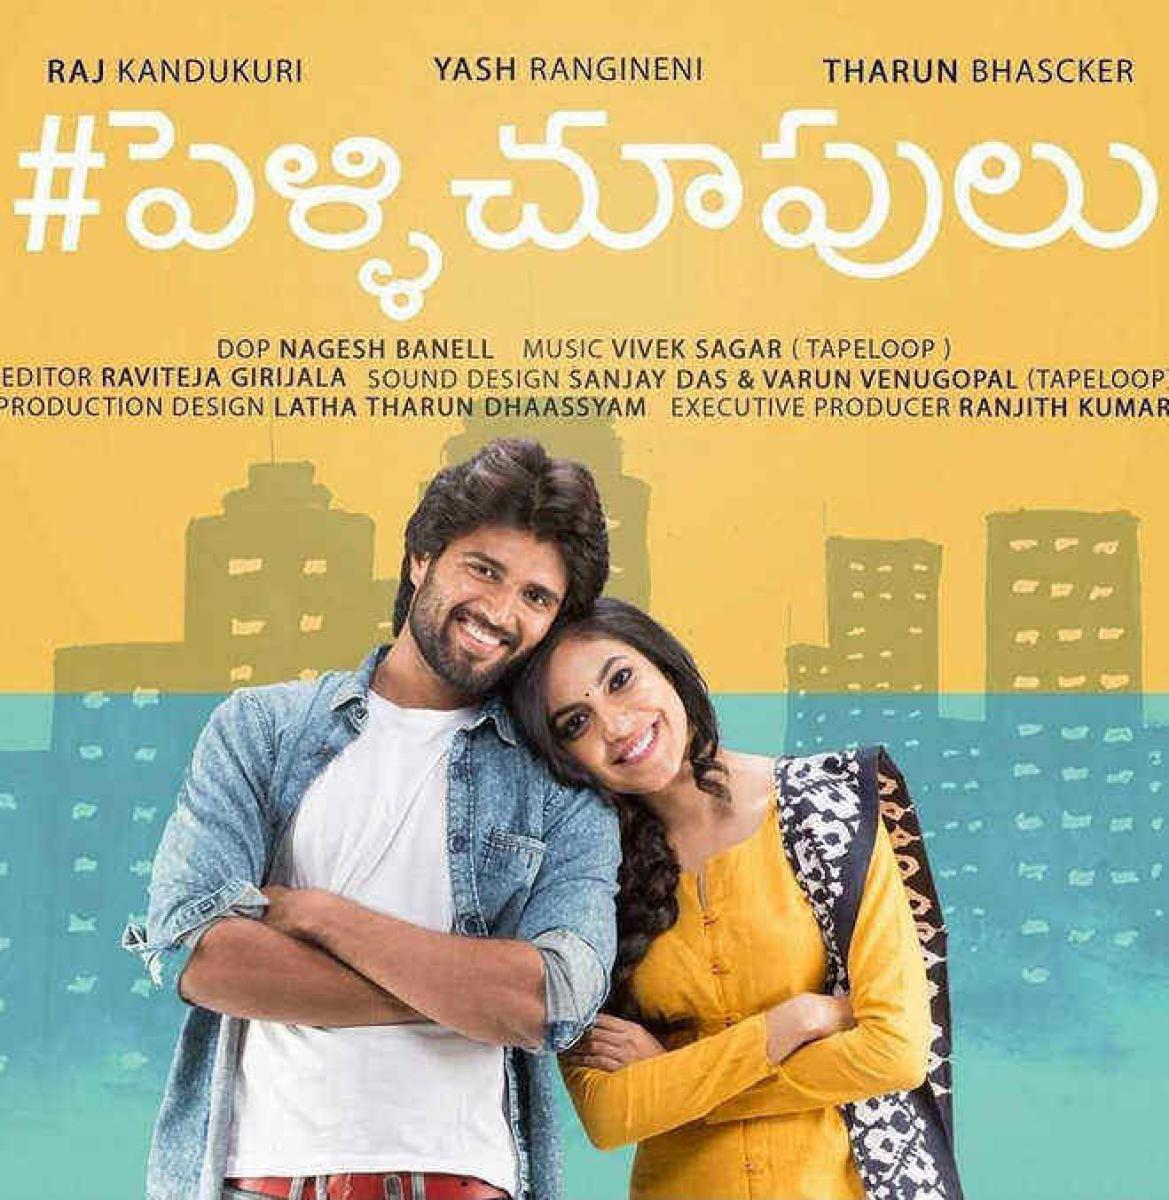 Twitter Review: Pellichoopulu Telugu movie